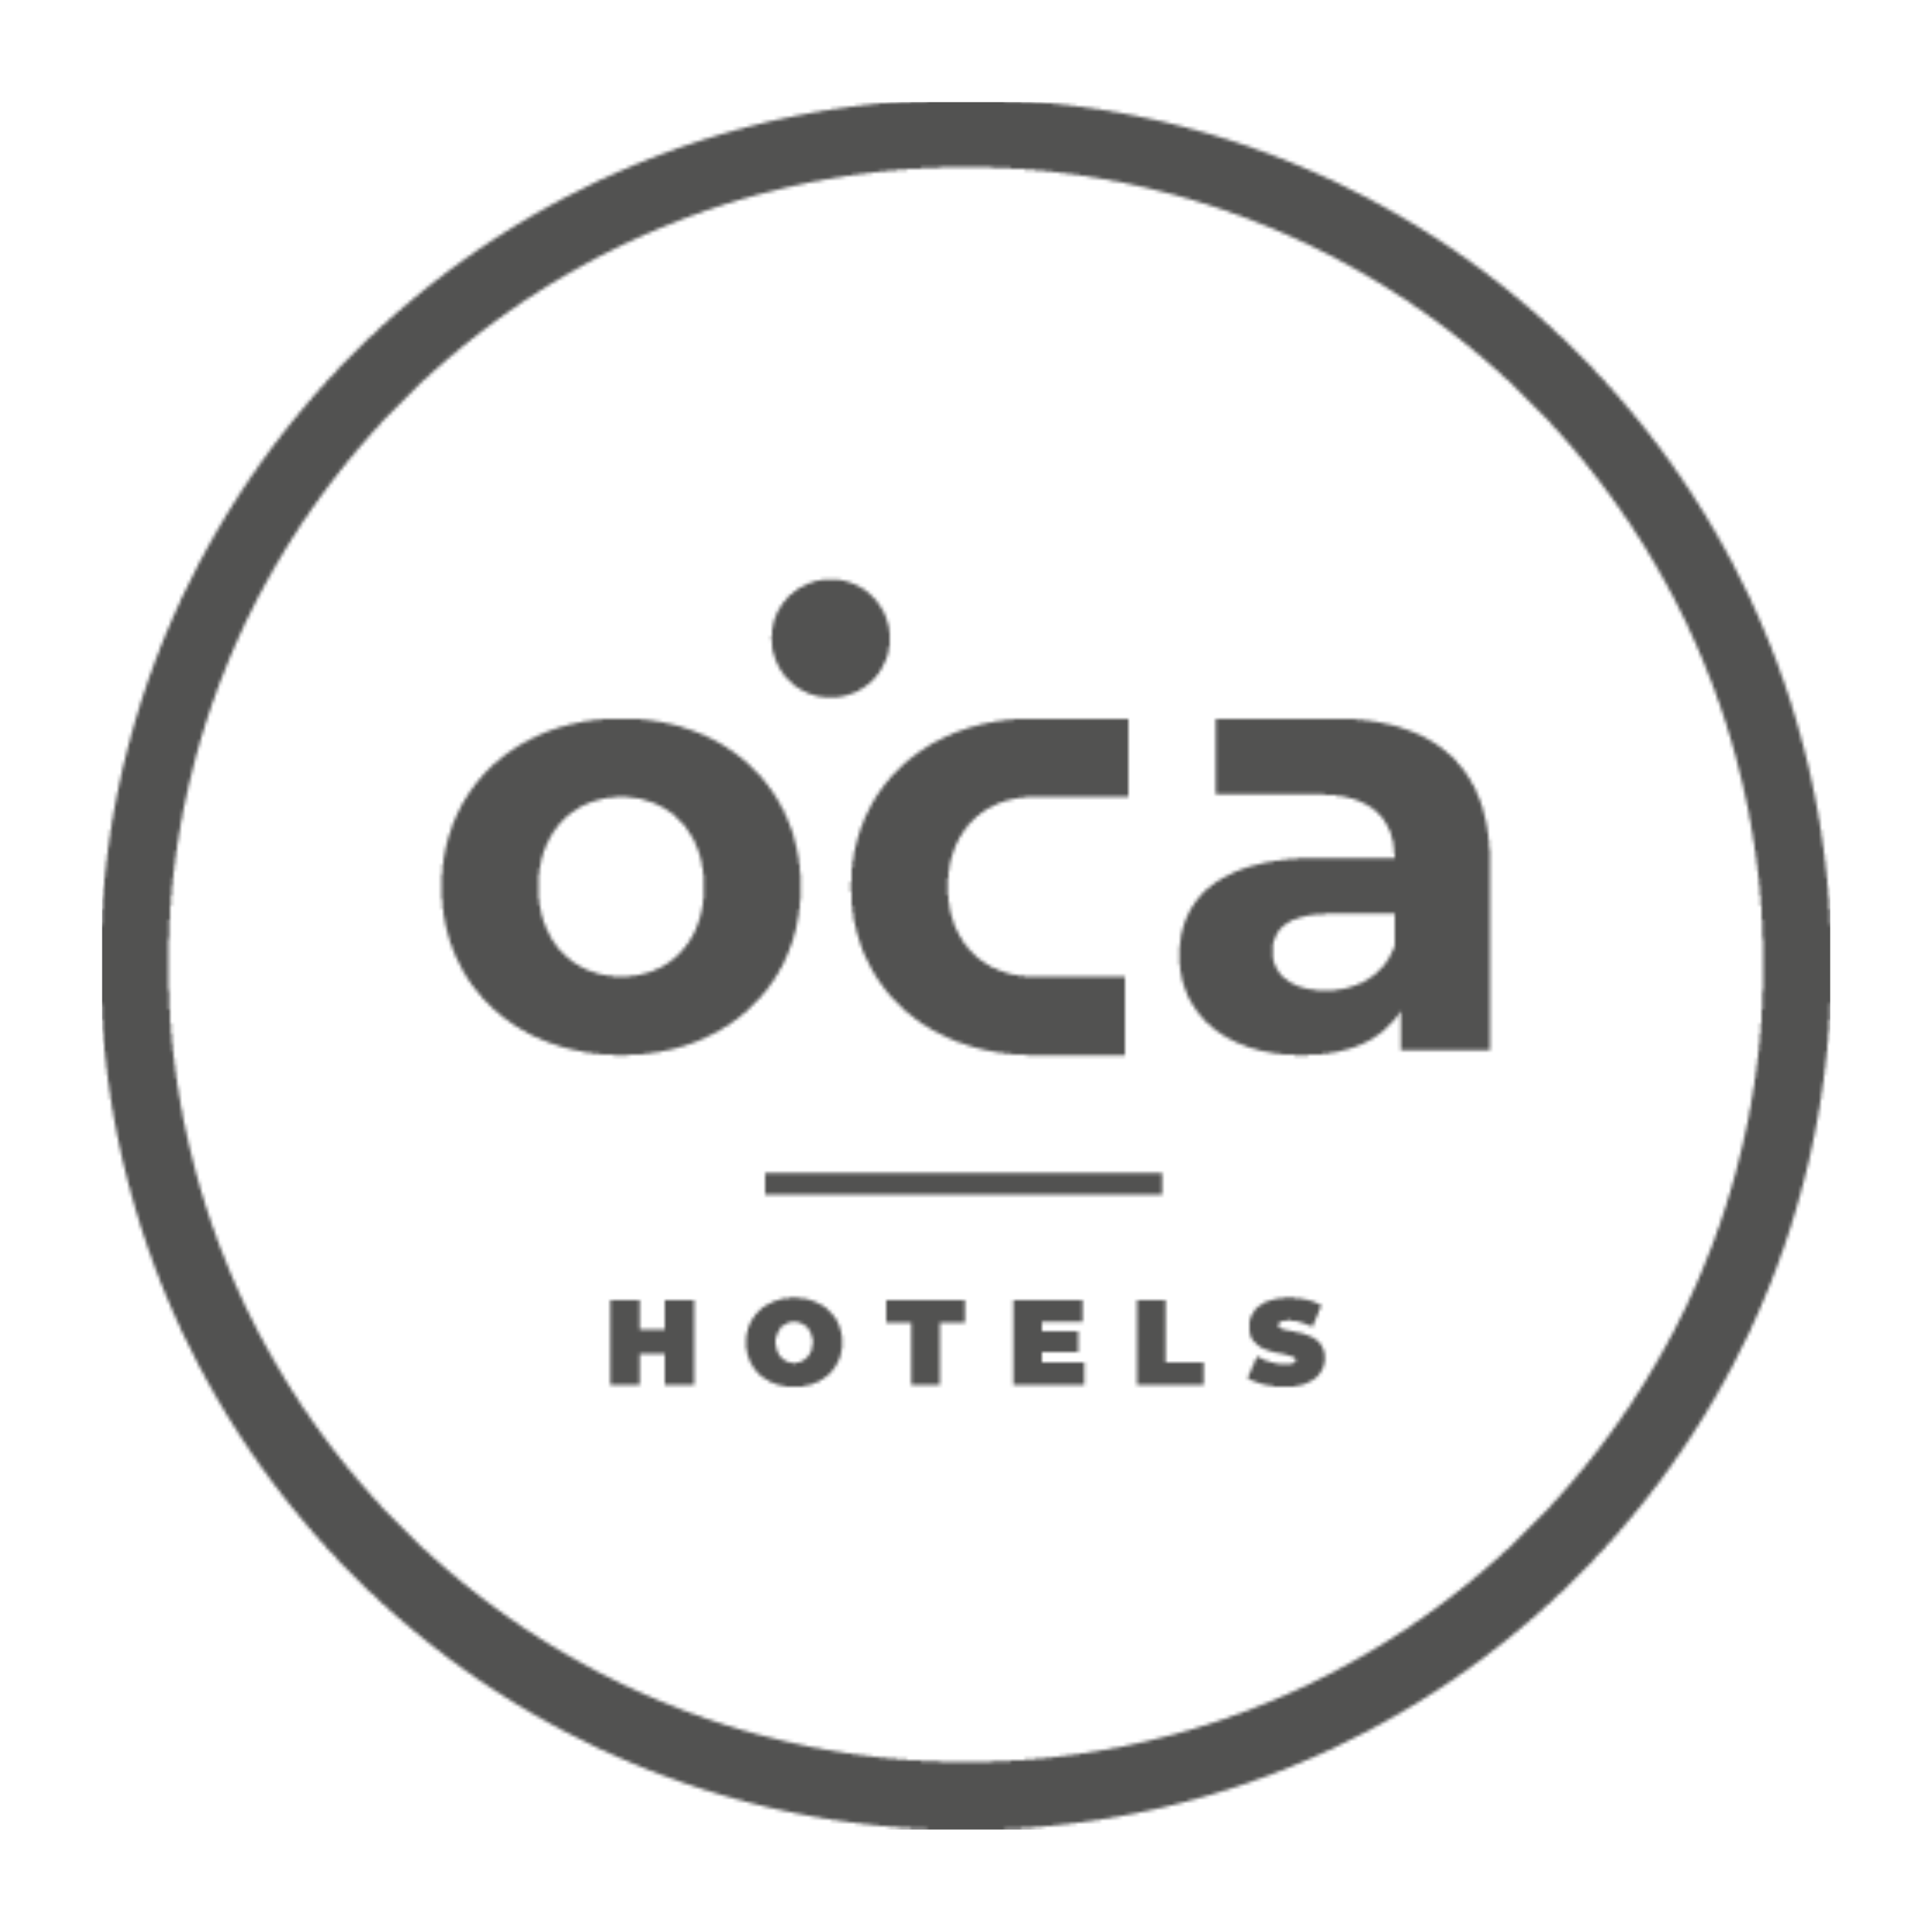 https://sdcompostela.com/wp-content/uploads/2022/11/Oca-Hoteles.png